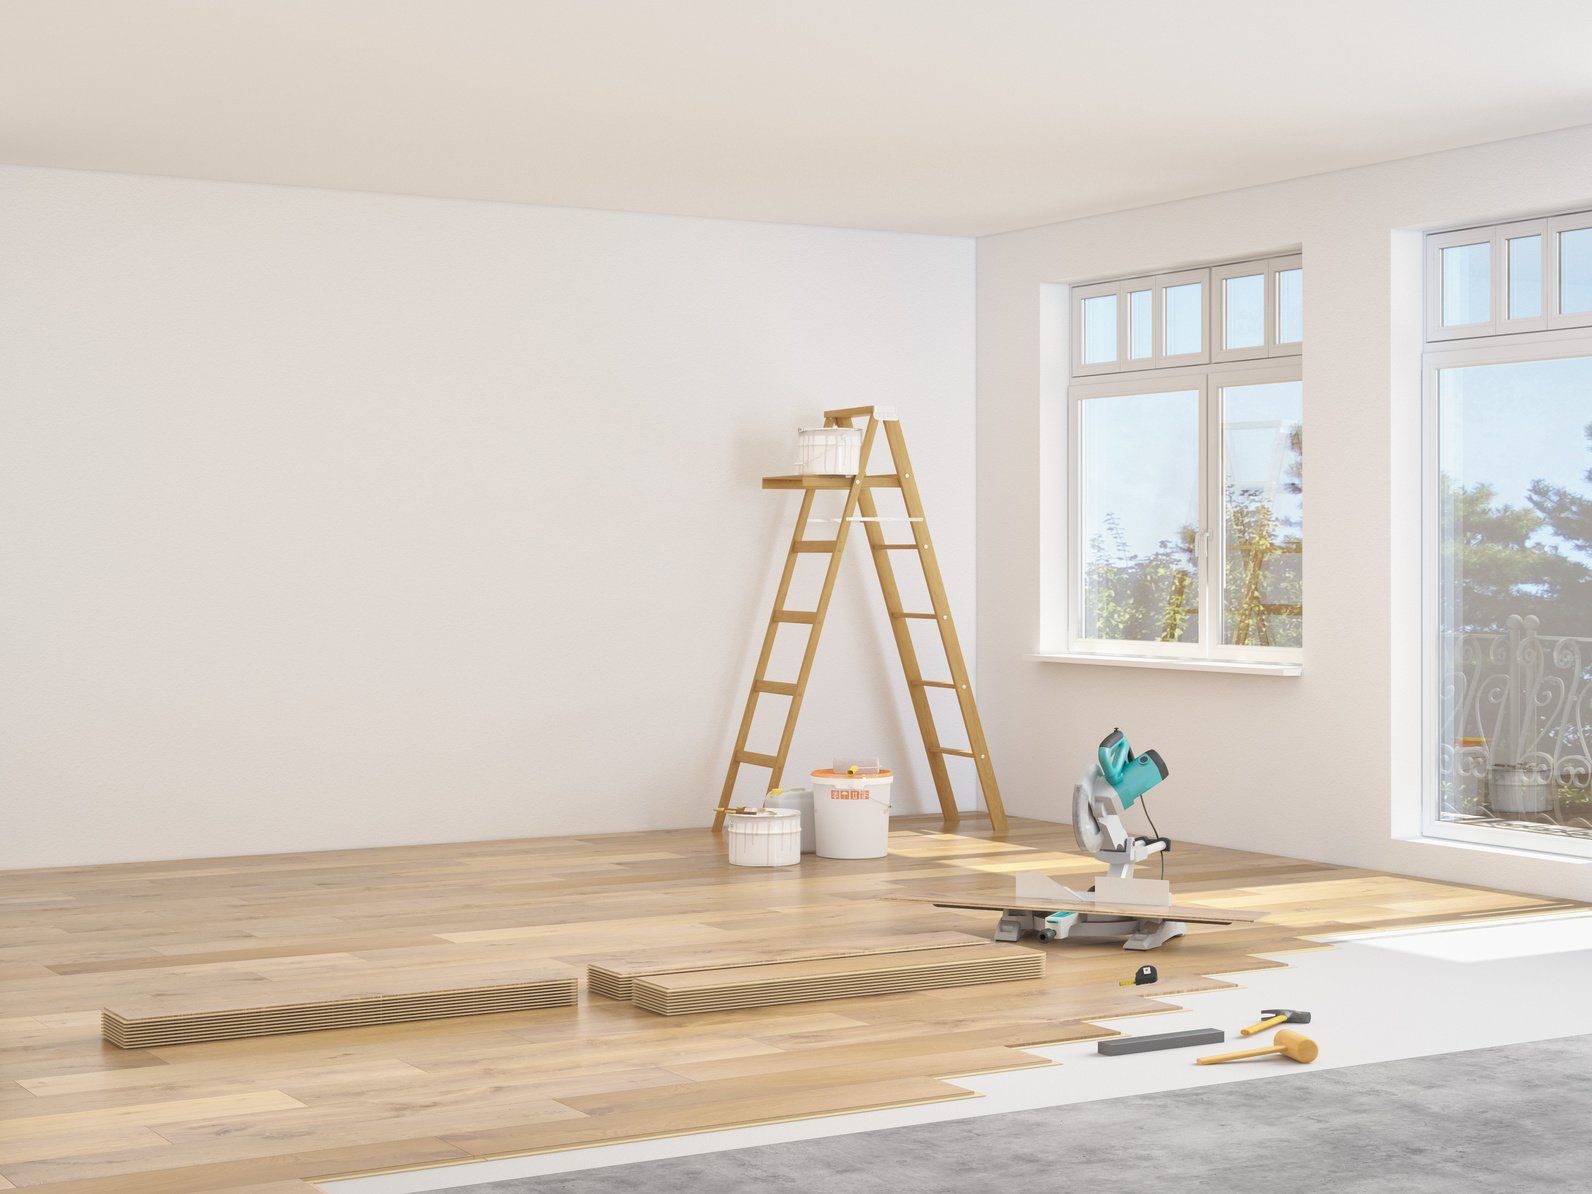 Réussir la rénovation de votre petit appartement : astuces et conseils